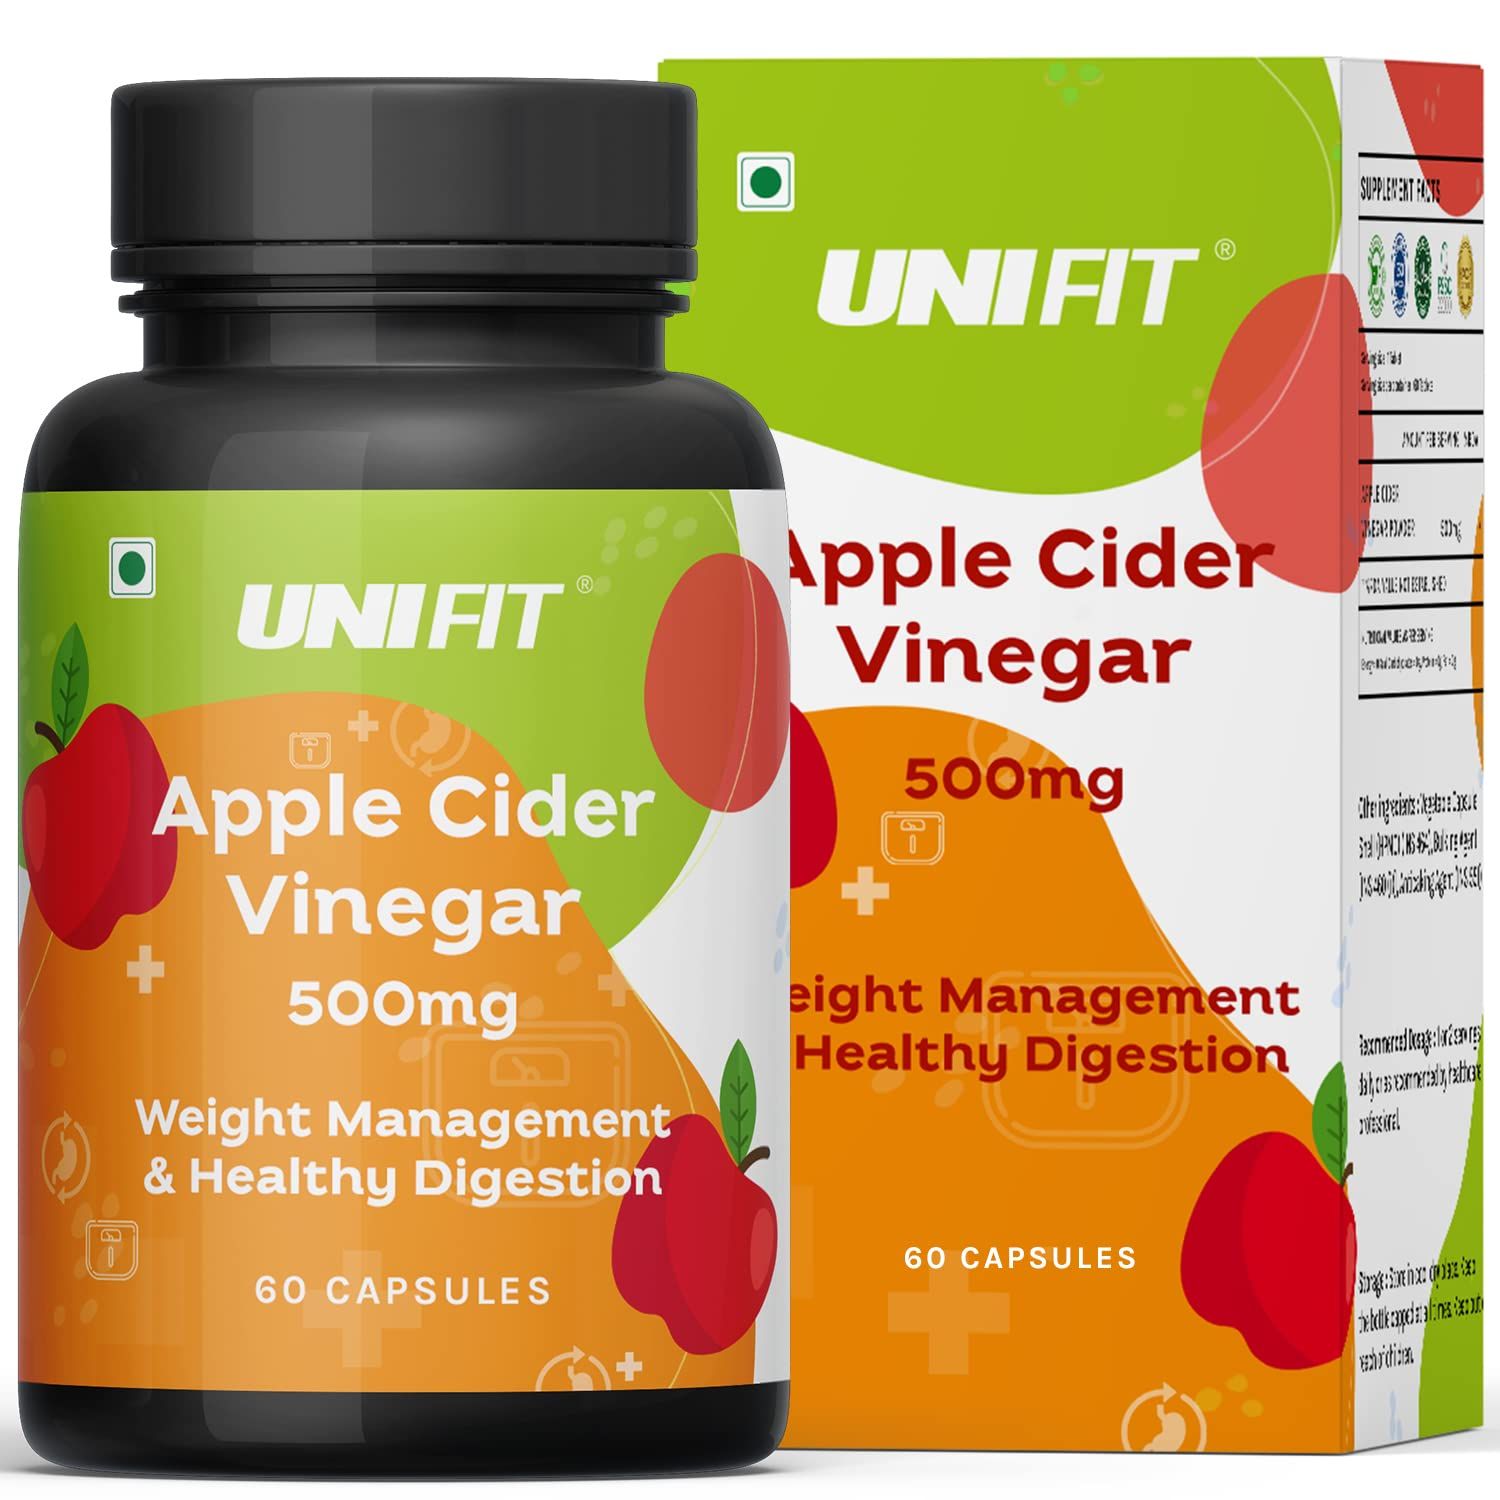 Unifit Apple Cider Vinegar Weight Management Image